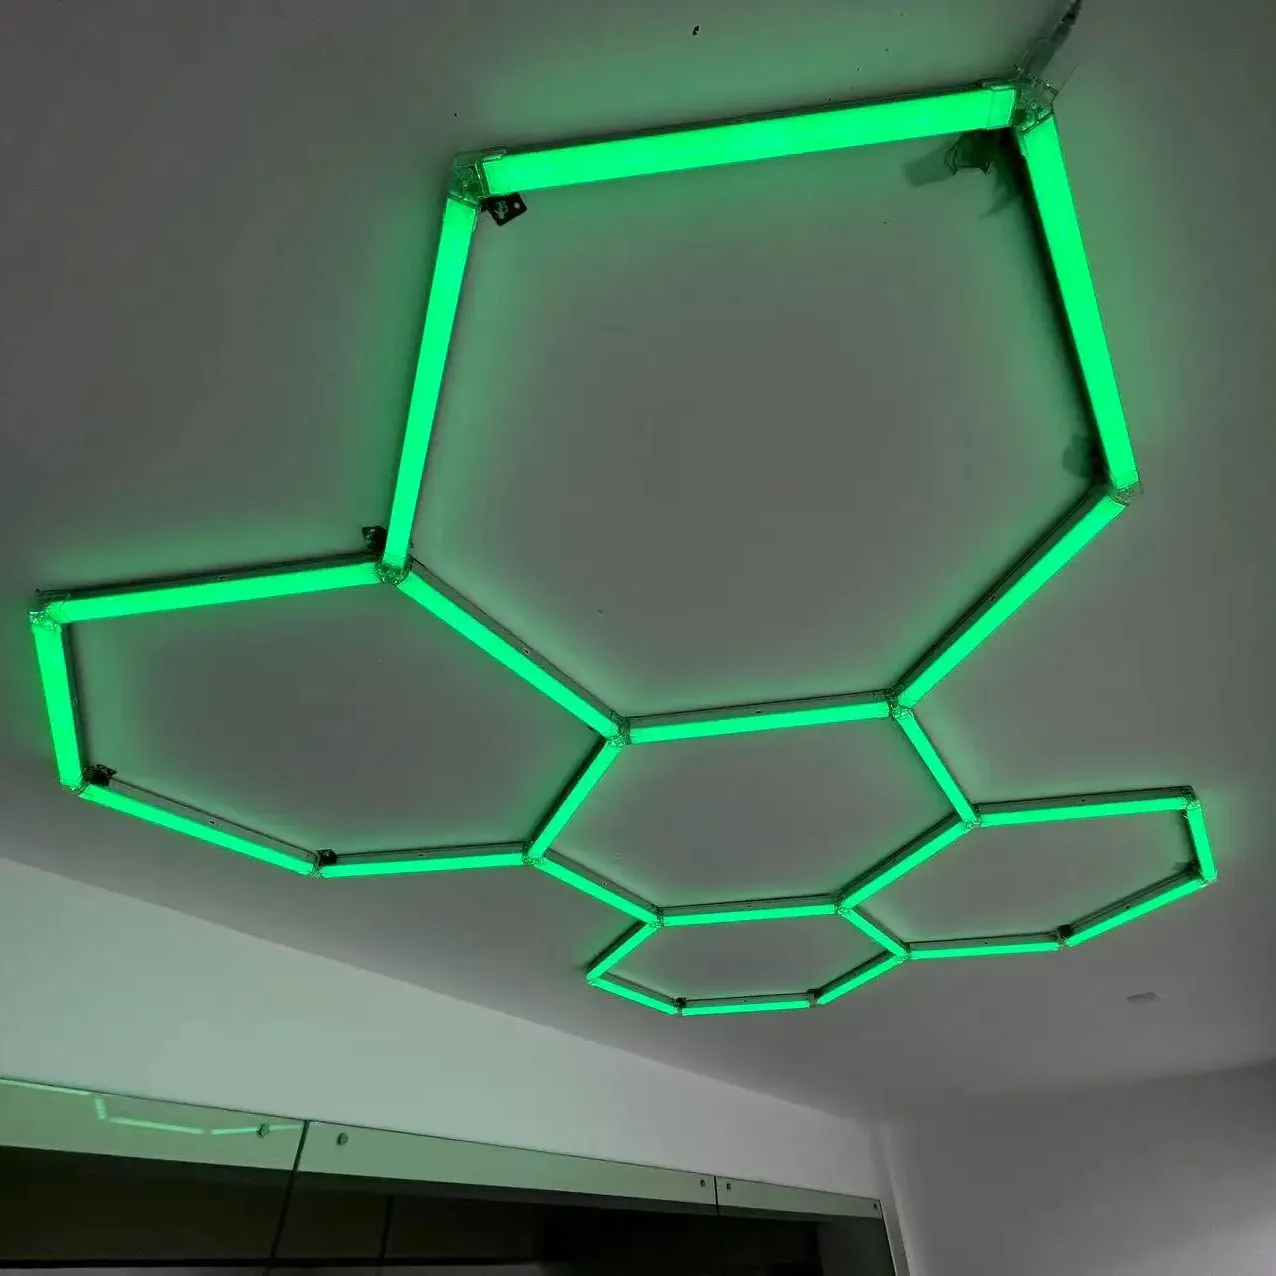 Factory Direct 110V Hexagonal LED Light Detailing Workshop Ceiling Lights for Gym Garage for Working Light Genre